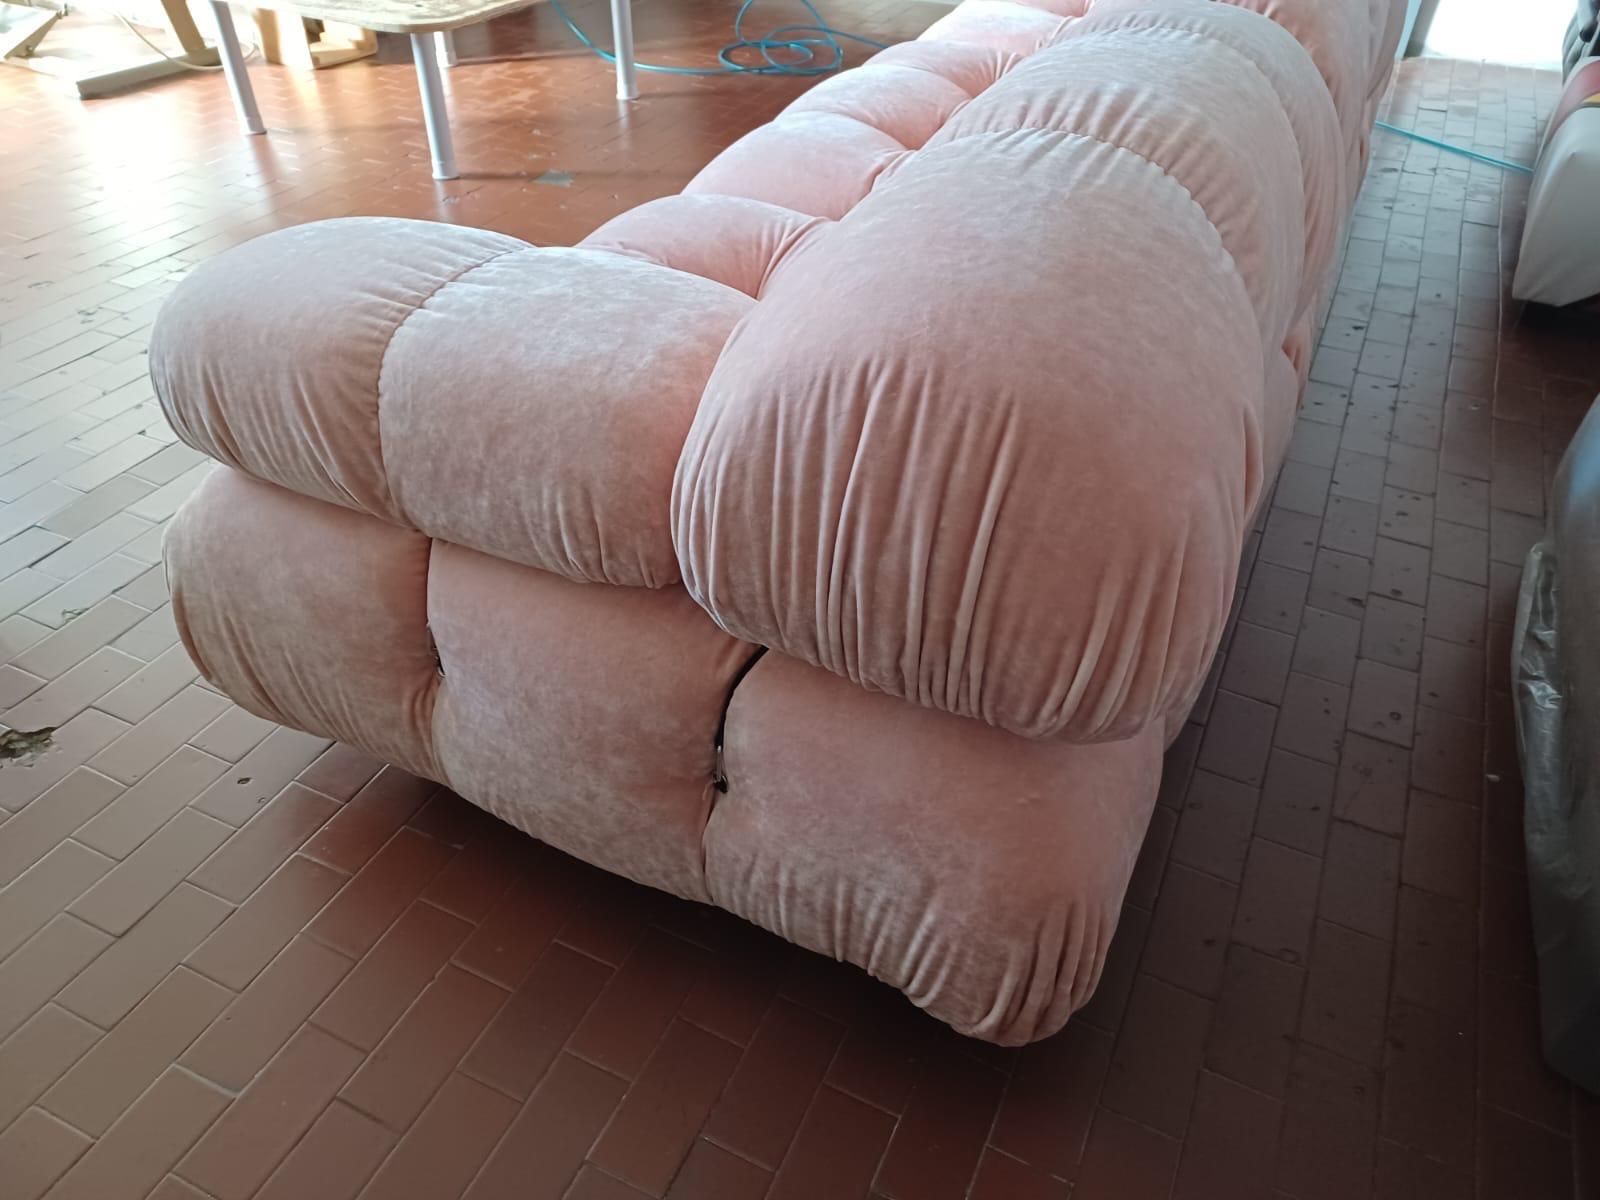  Erste  Auflage Mario Bellini Camaleonda modulares Sofa. Besteht aus drei Sitzen, alle mit Rückenlehne und zwei Armlehnen. 

Es handelt sich um eine Originalausgabe aus den 1970er Jahren, die in einem wunderschönen pfirsichfarbenen/rosafarbenen Samt